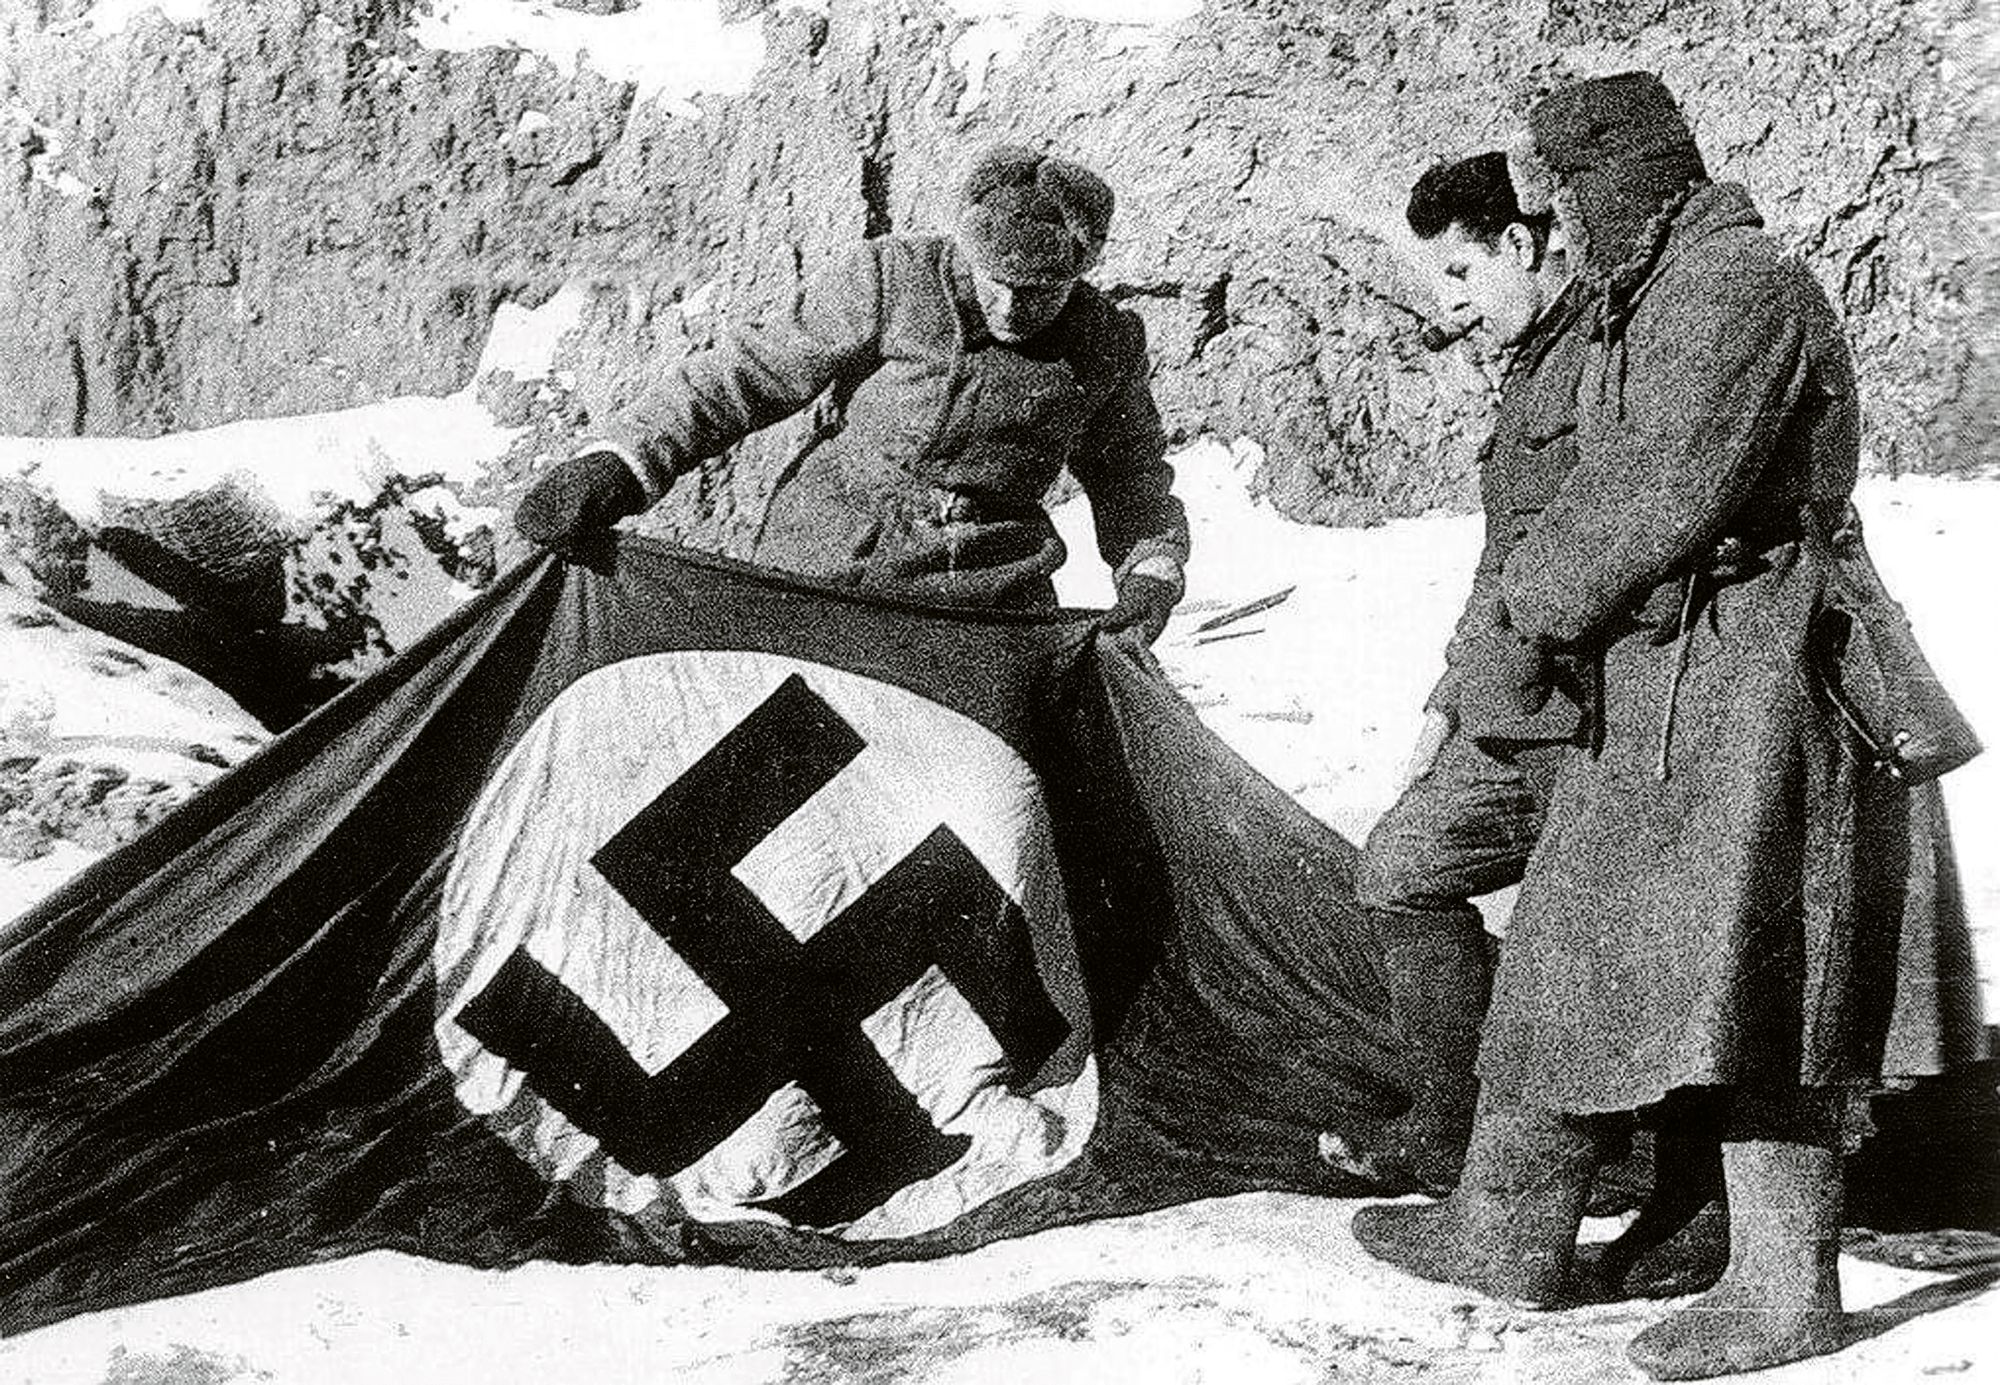 Saksan hakaristi­lippu oli paras mahdollinen sota­saalis Stalingradin voitokkaille puolustajille. © Pictures From History / Universal Images Group / MVPhotos